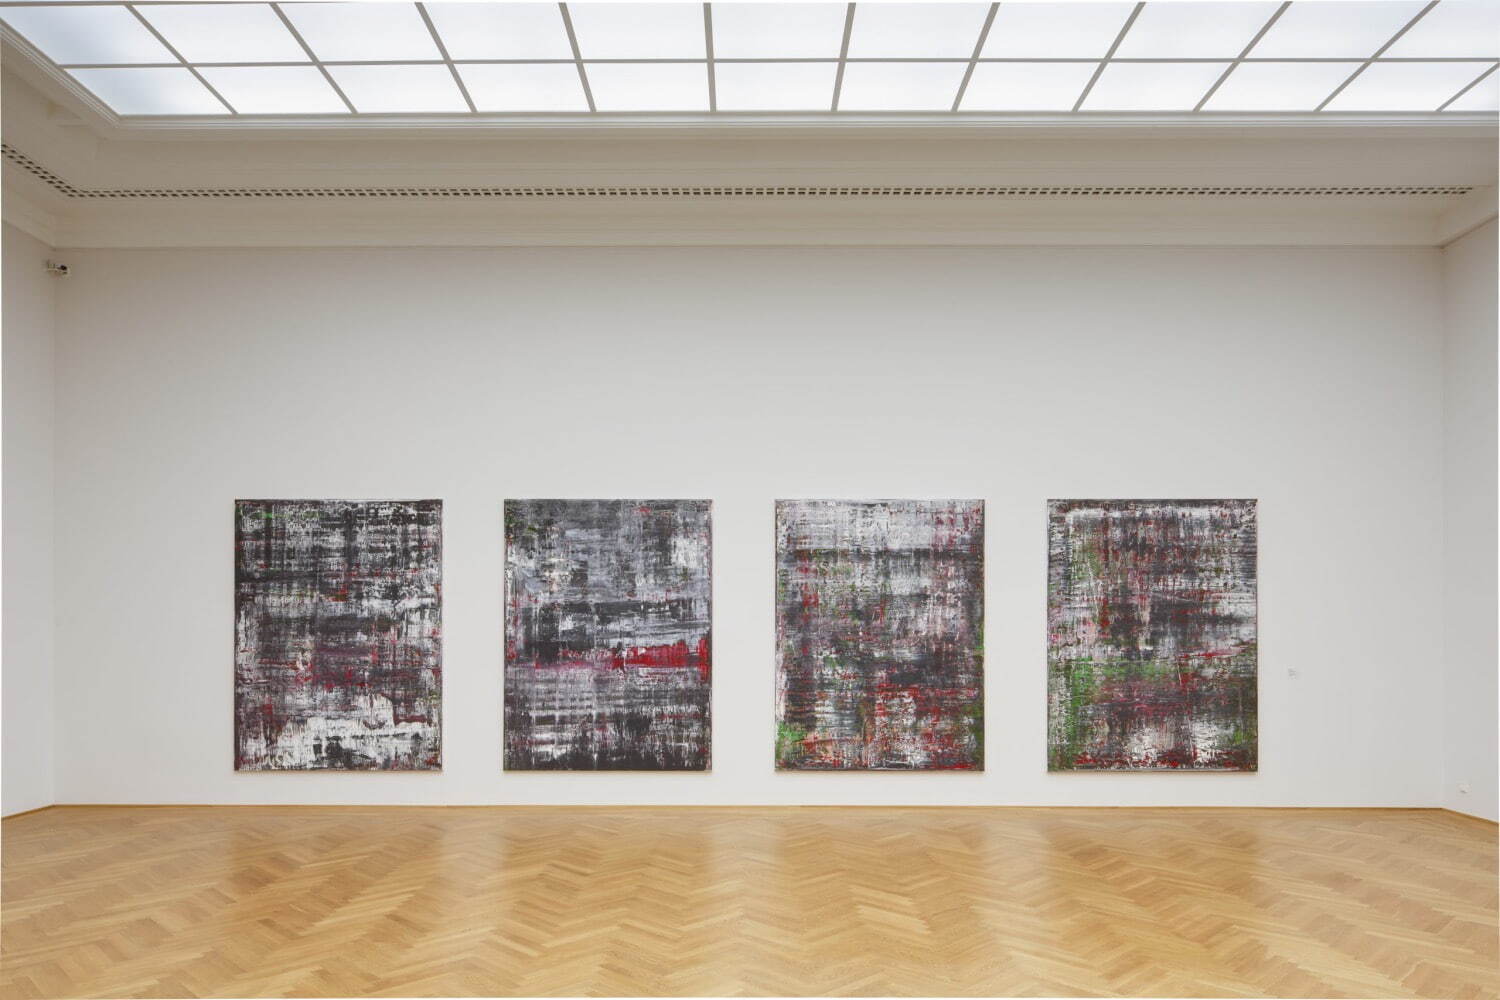 《ビルケナウ》2014年［CR 937/1‐4］ 油彩、キャンバス ゲルハルト・リヒター財団
ドレスデン・アルベルティヌム美術館での展示風景(2015年)
Photo： David Brandt, courtesy Gerhard Richter Archive, Dresden
©︎Gerhard Richter 2022 (07062022)